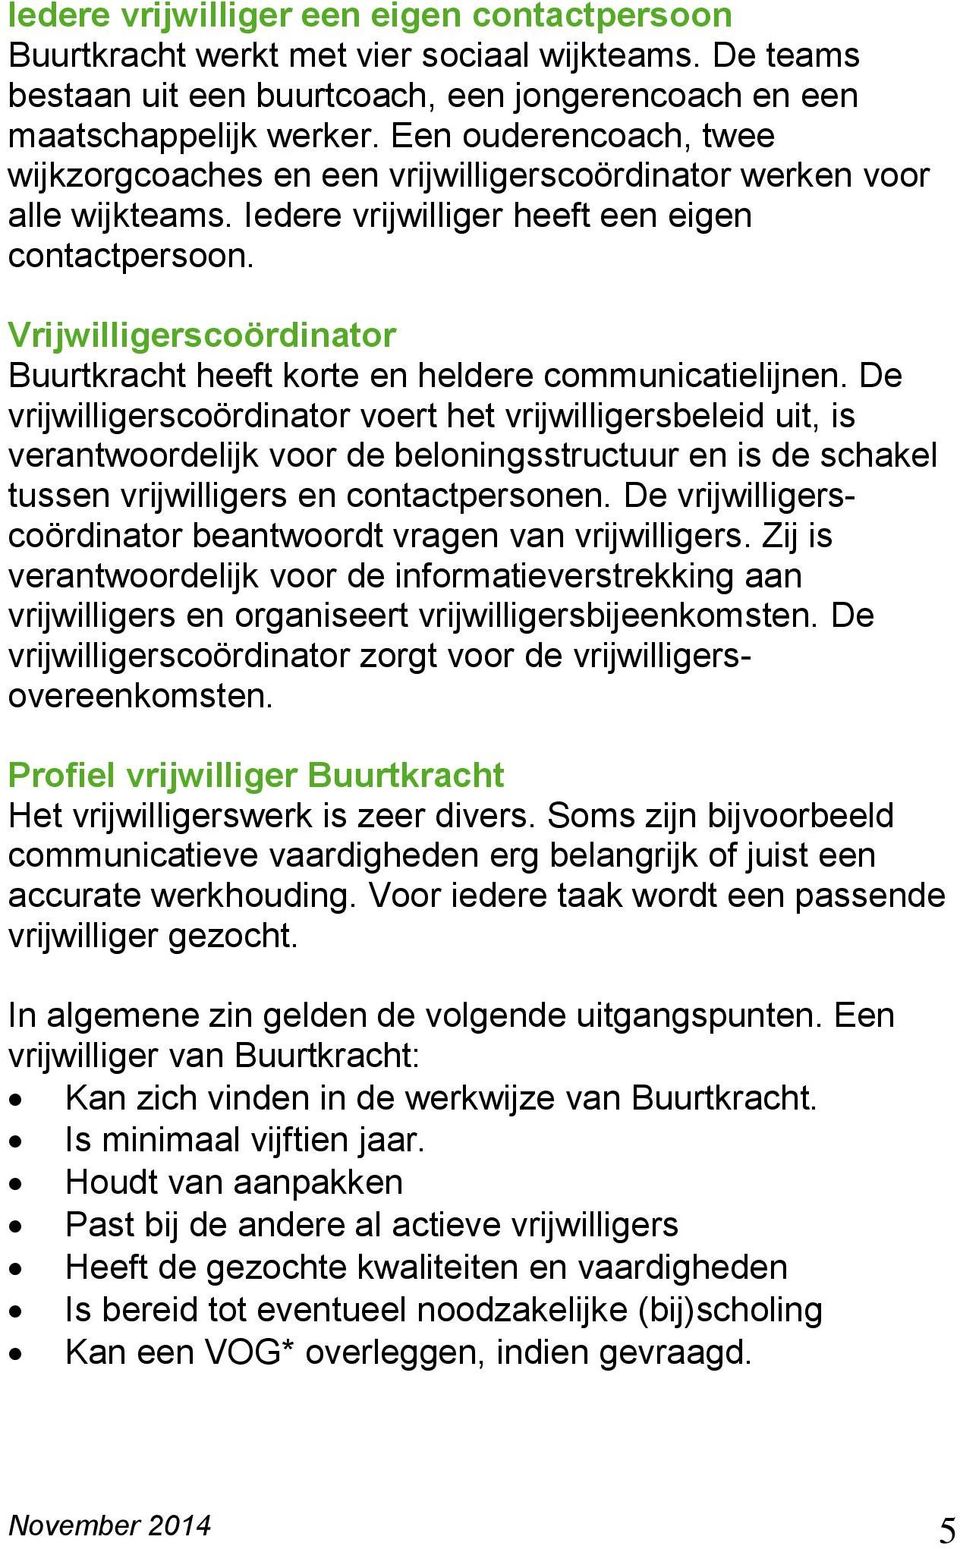 Vrijwilligerscoördinator Buurtkracht heeft korte en heldere communicatielijnen.